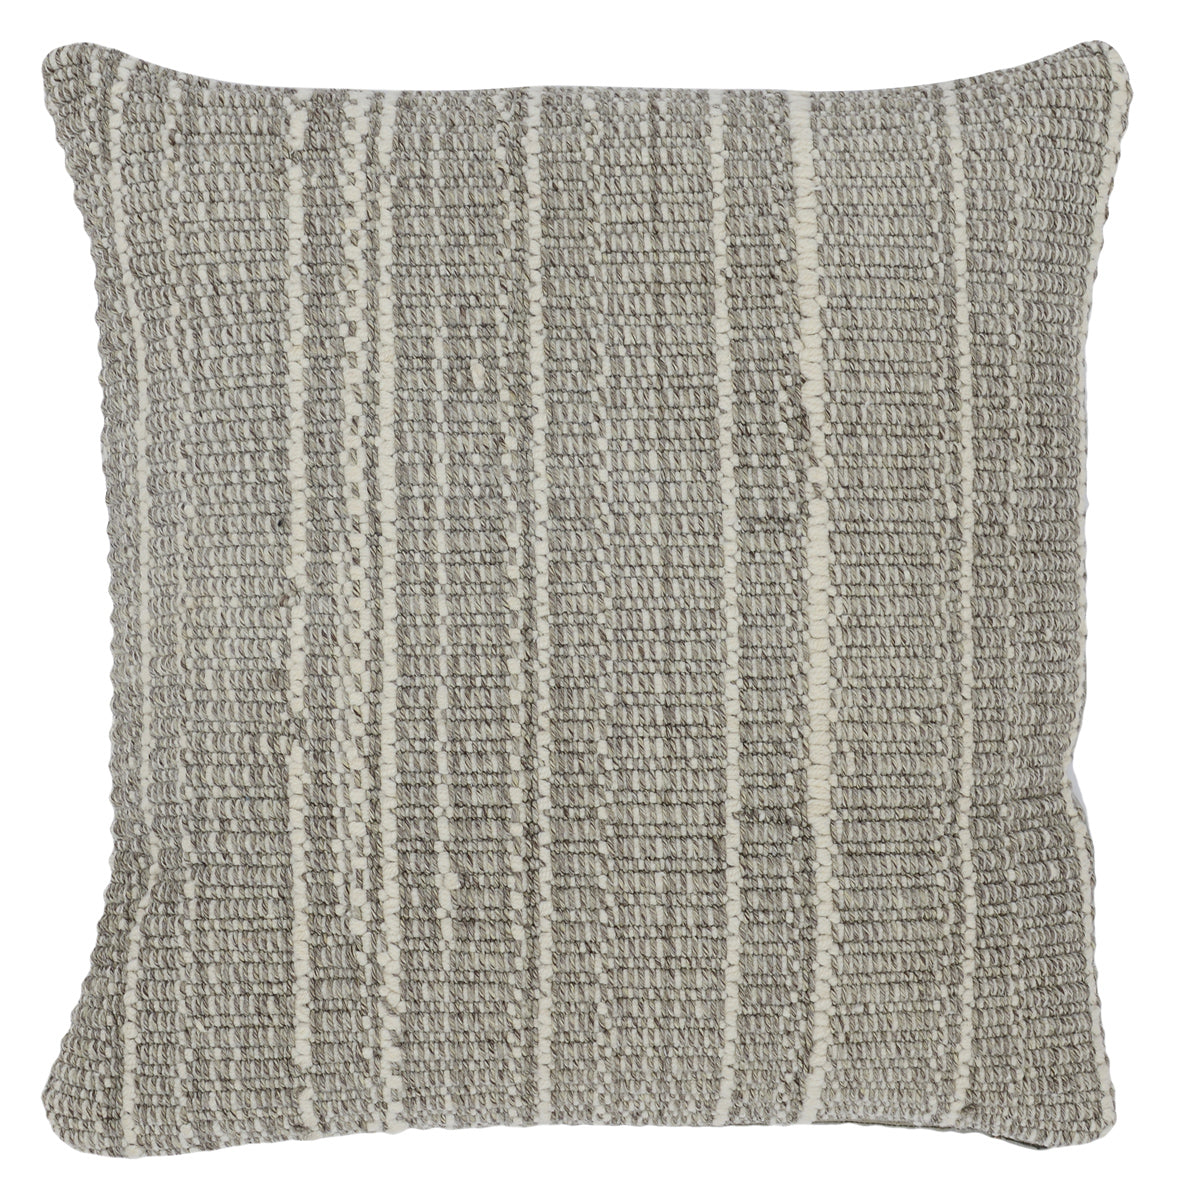 Indoor/Outdoor Gray Throw Pillow Pair